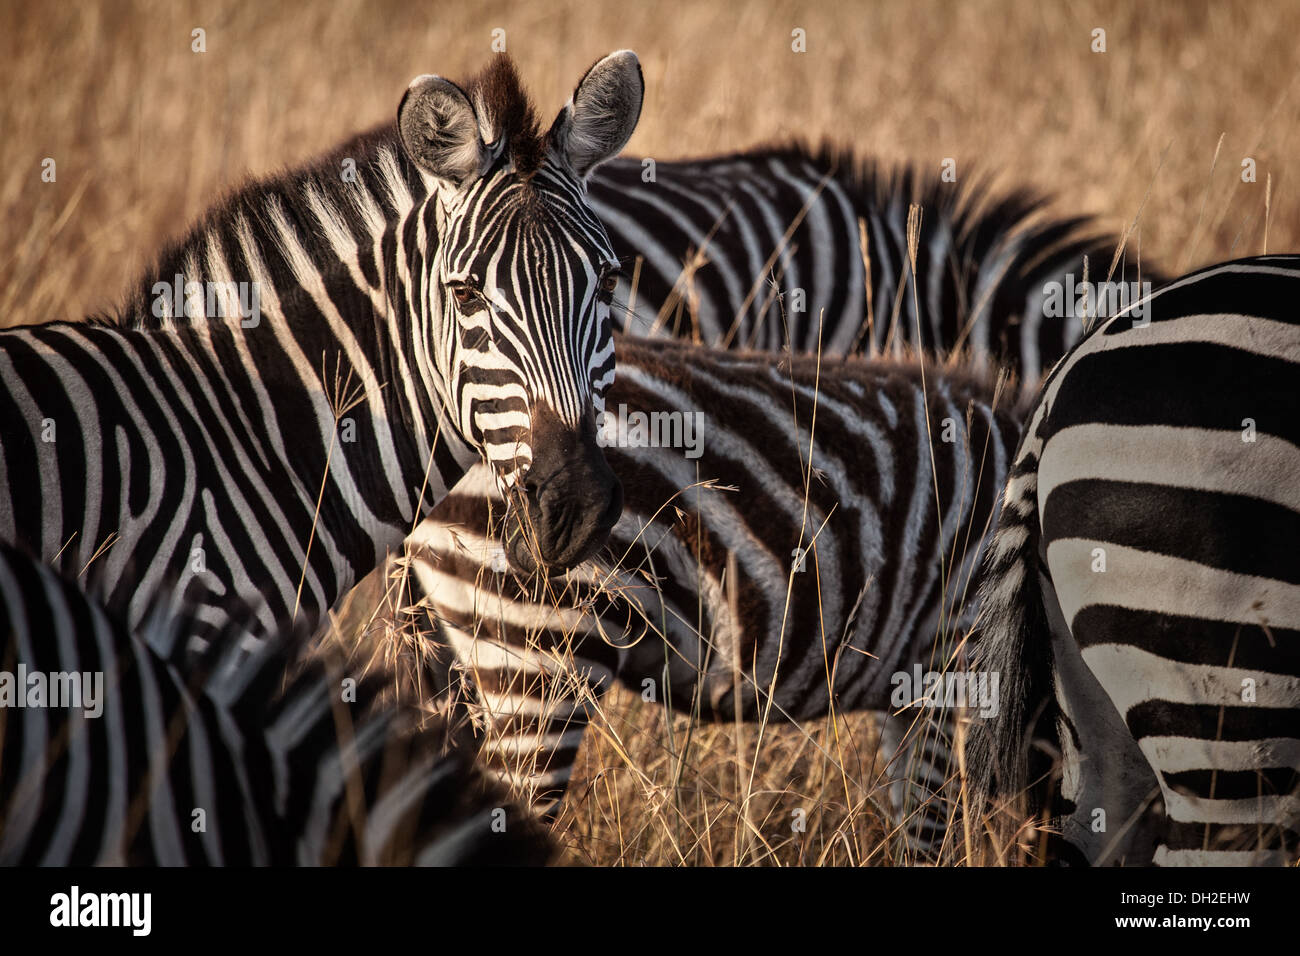 Zebra looking at camera Banque D'Images